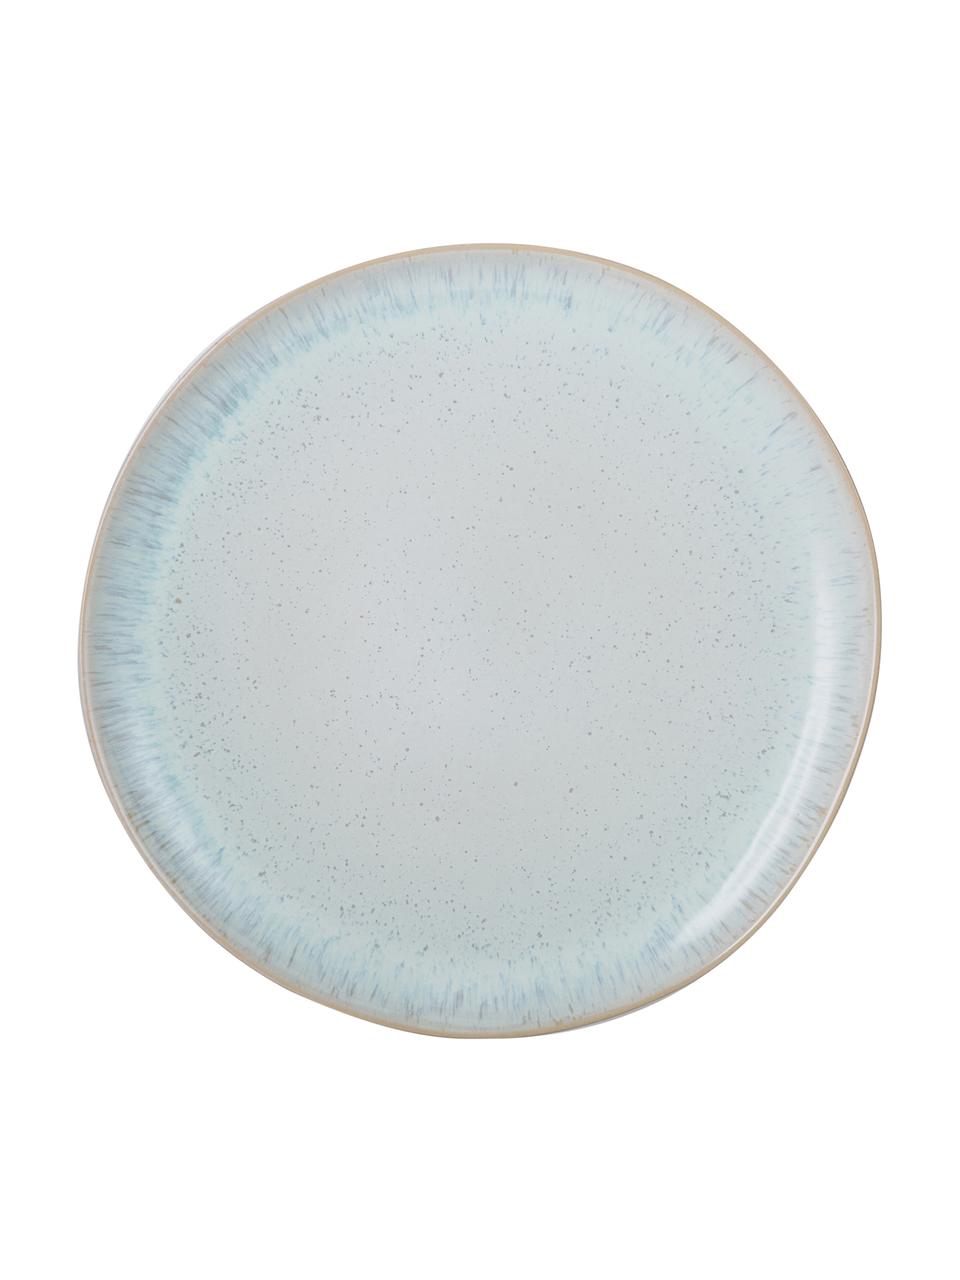 Piatto piano dipinto a mano Areia, Gres, Azzurro, bianco latteo, beige chiaro, Ø 28 cm